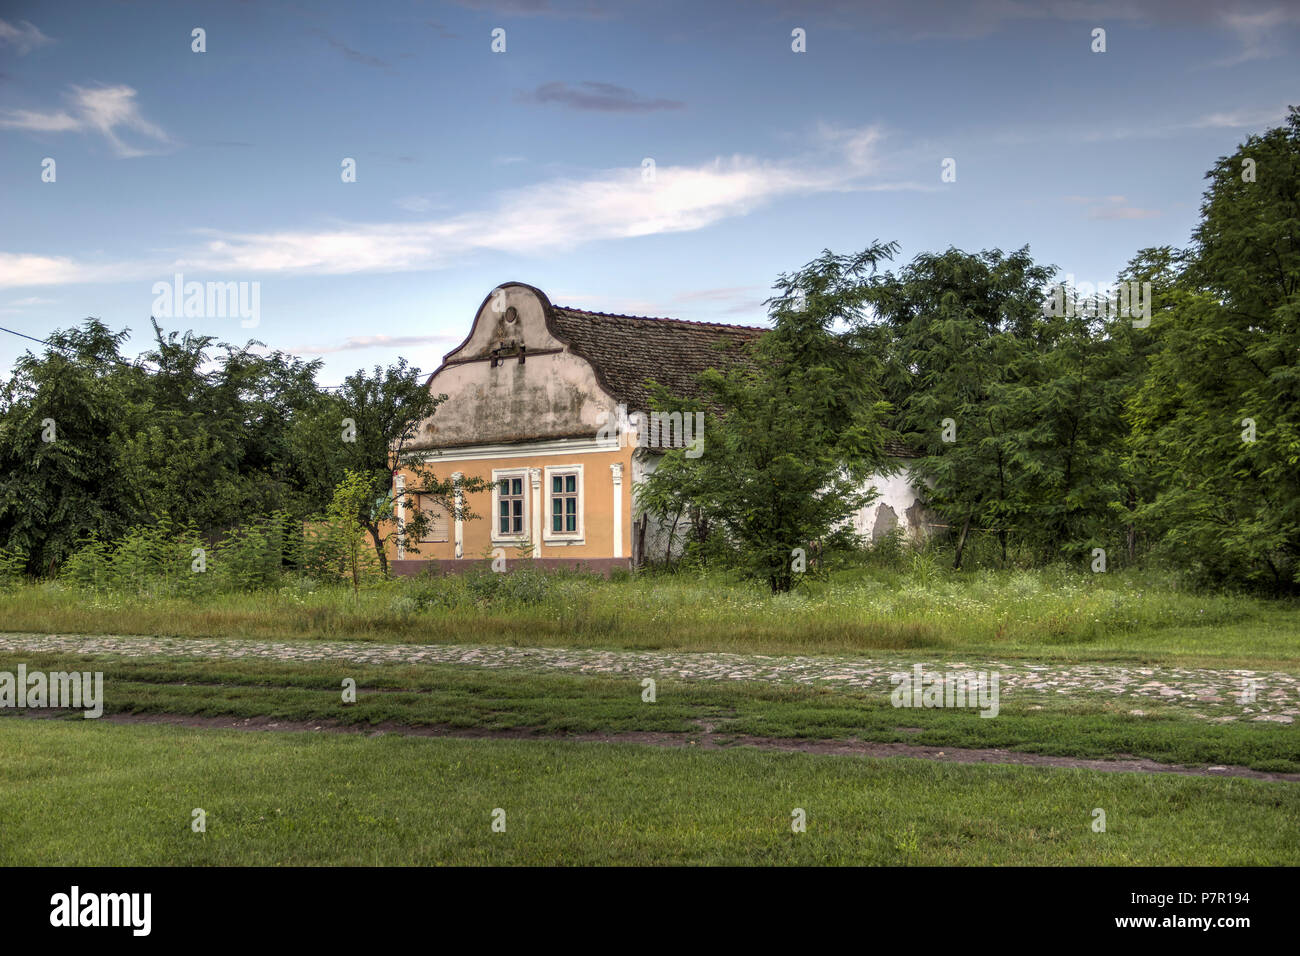 Die Vojvodina, Serbien - Haushalt neben dem Land Straße am Stadtrand von Belo Blato Dorf Stockfoto